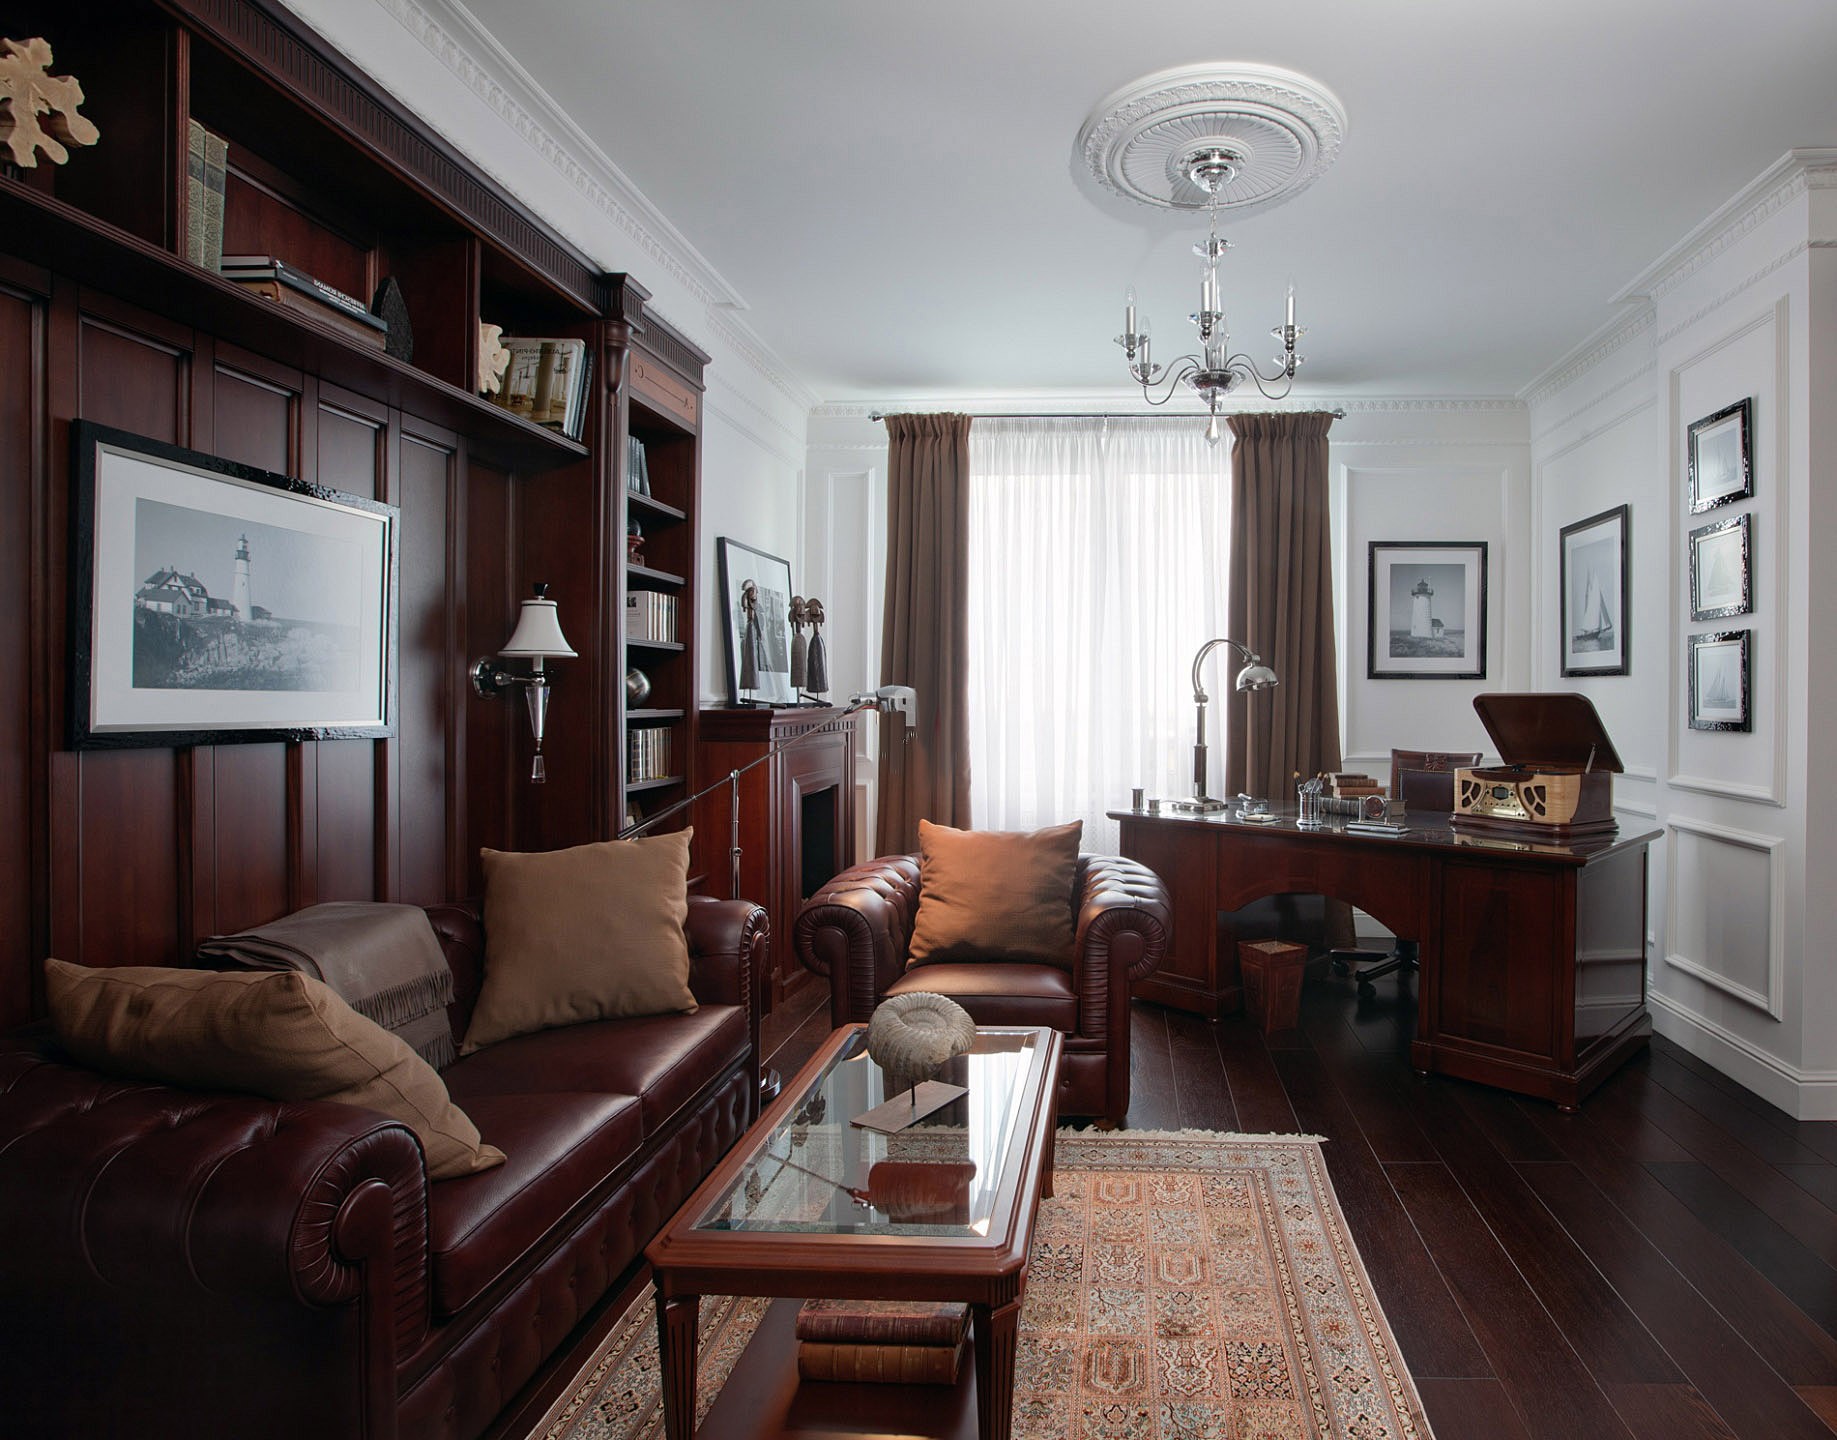 Как стилизовать ваше жилье под комнату из сериала «Шерлока»